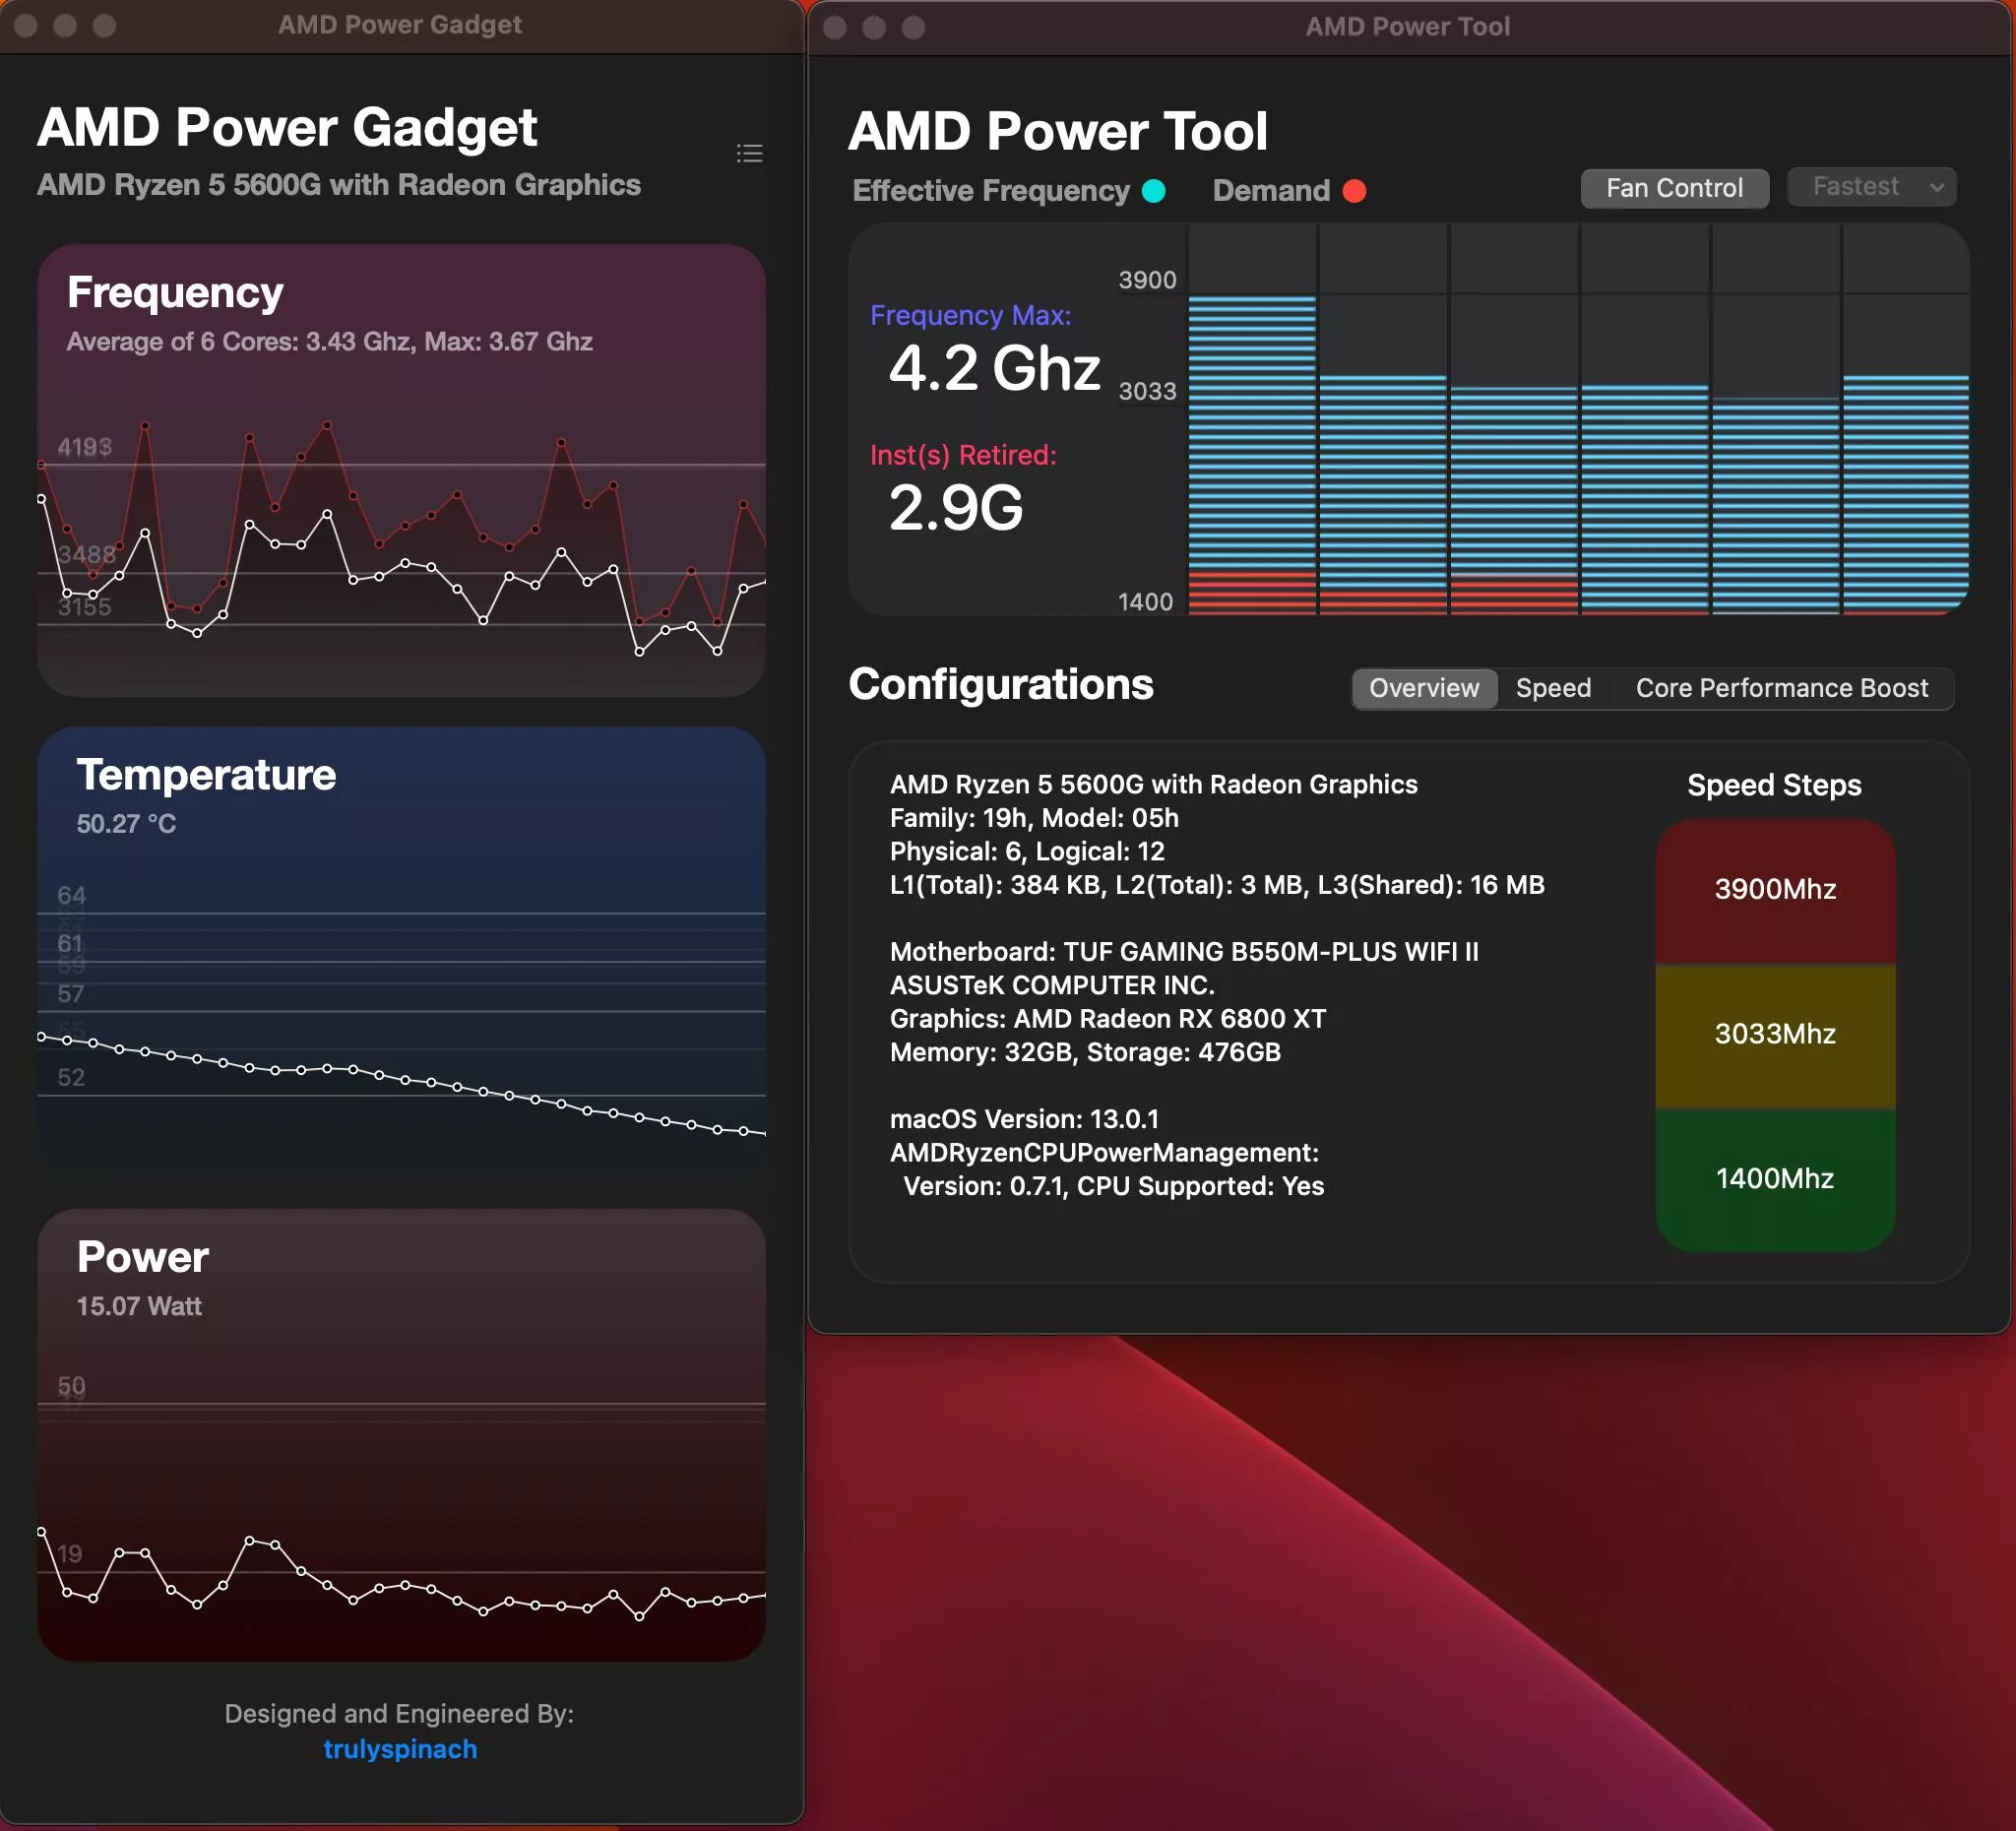 AMD Power Gadget